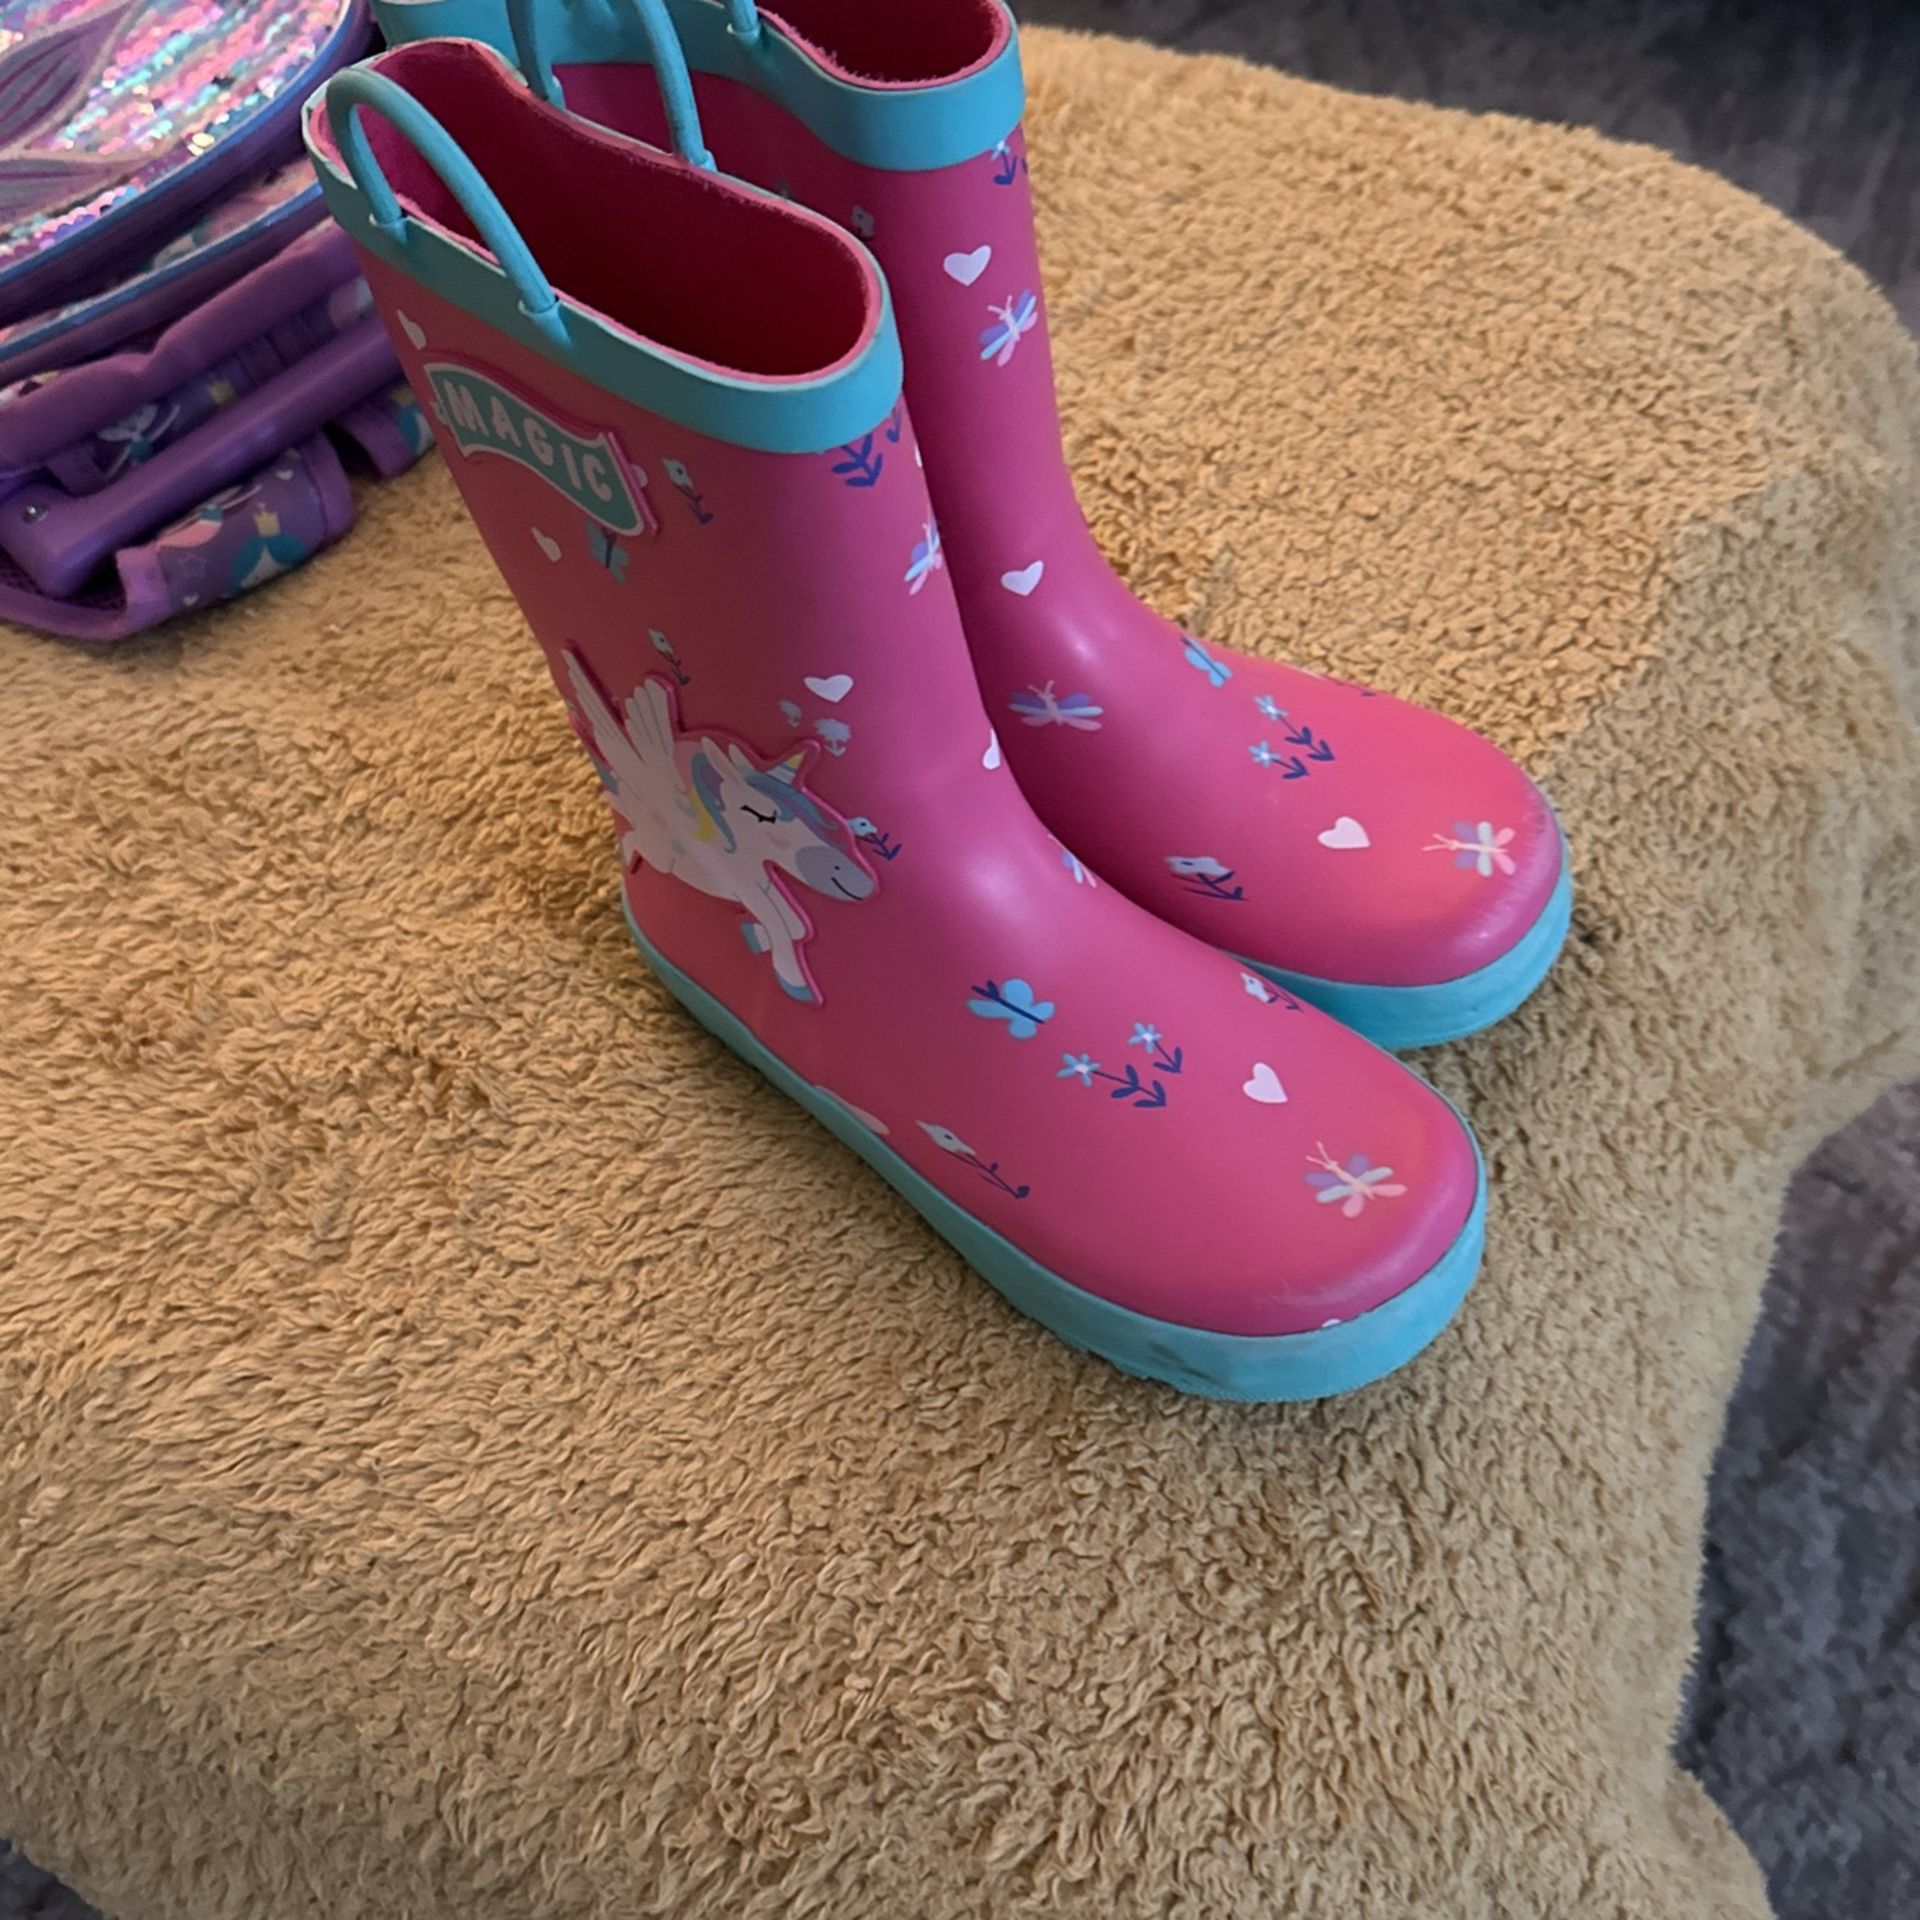 Little Girls Rain Boots 